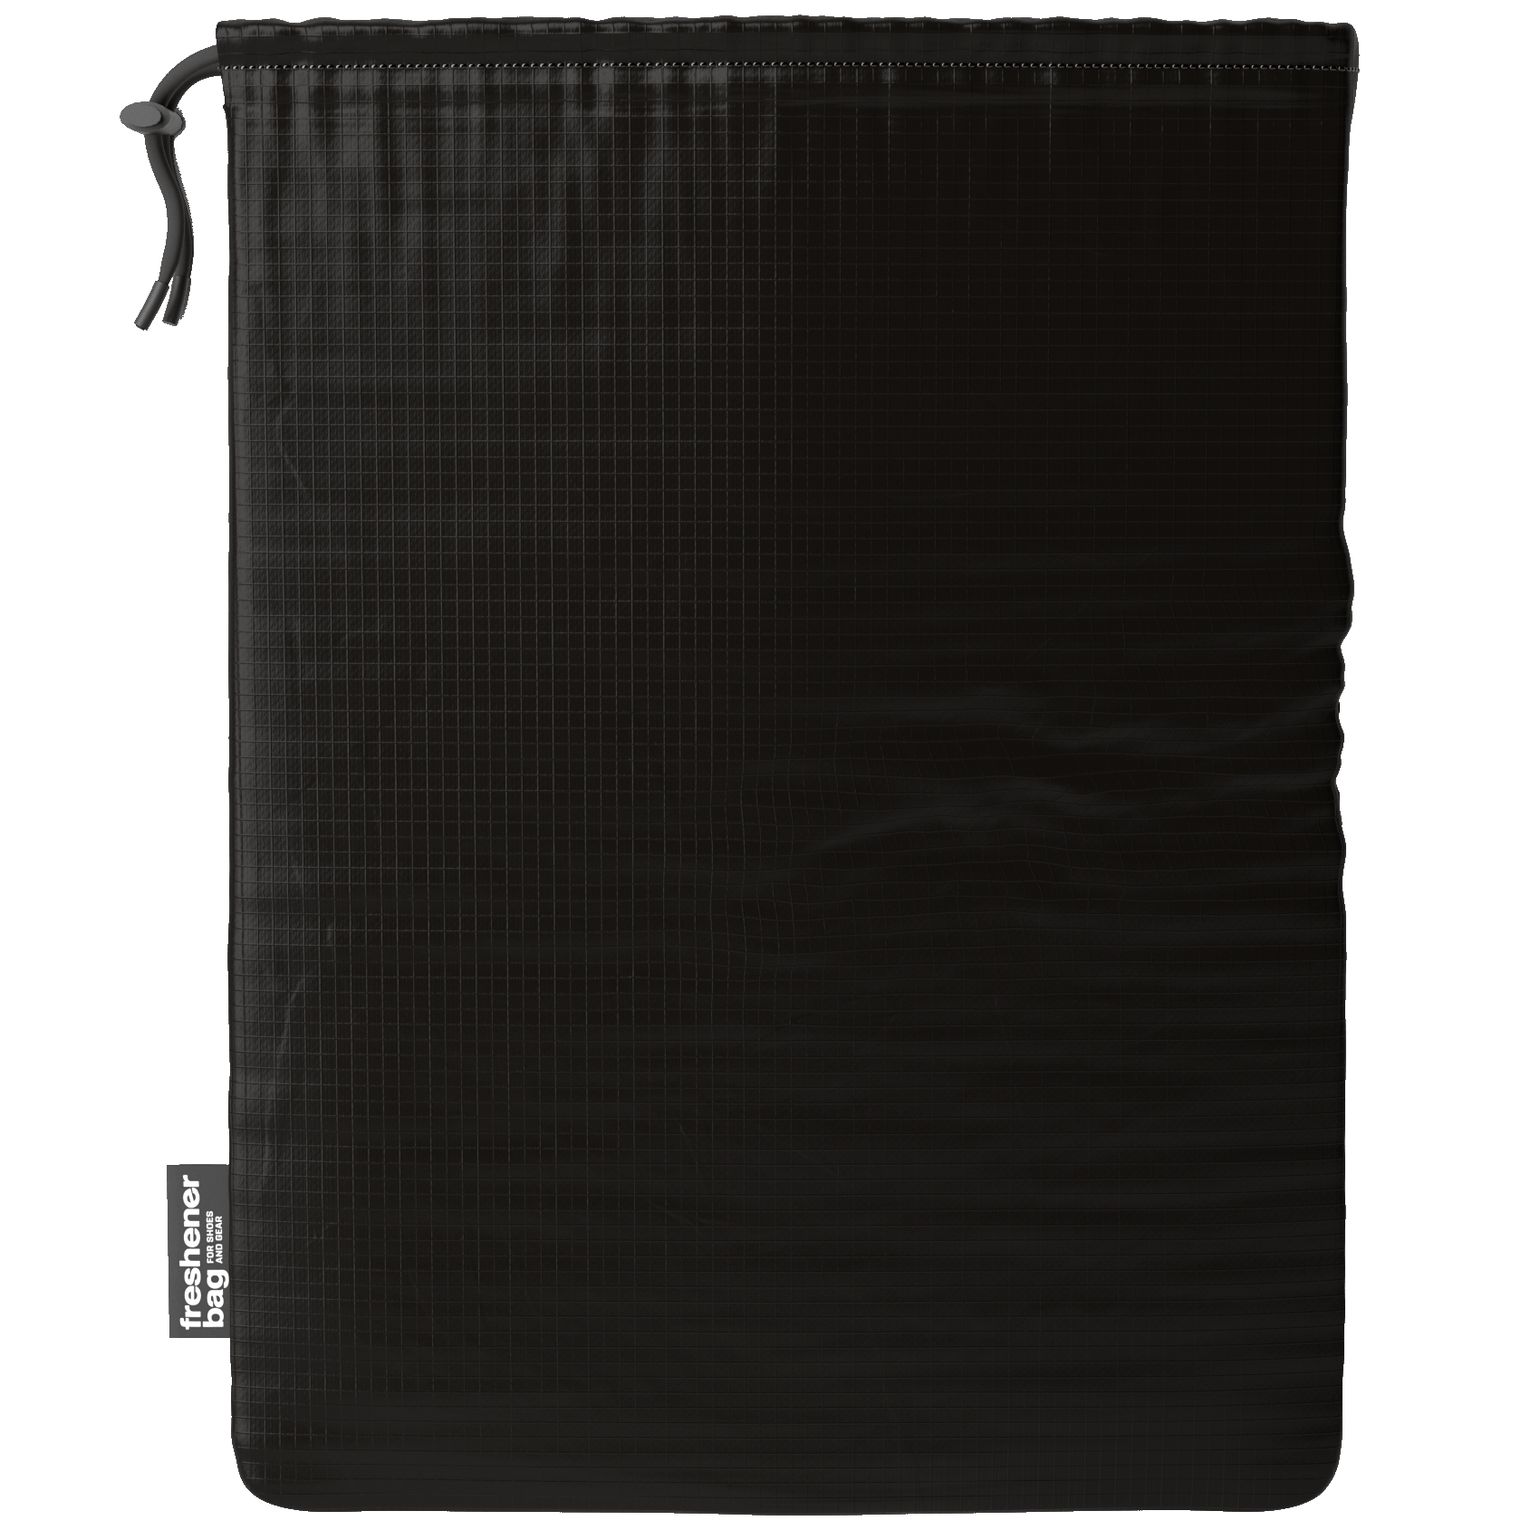 Freshener Bag Solid Black